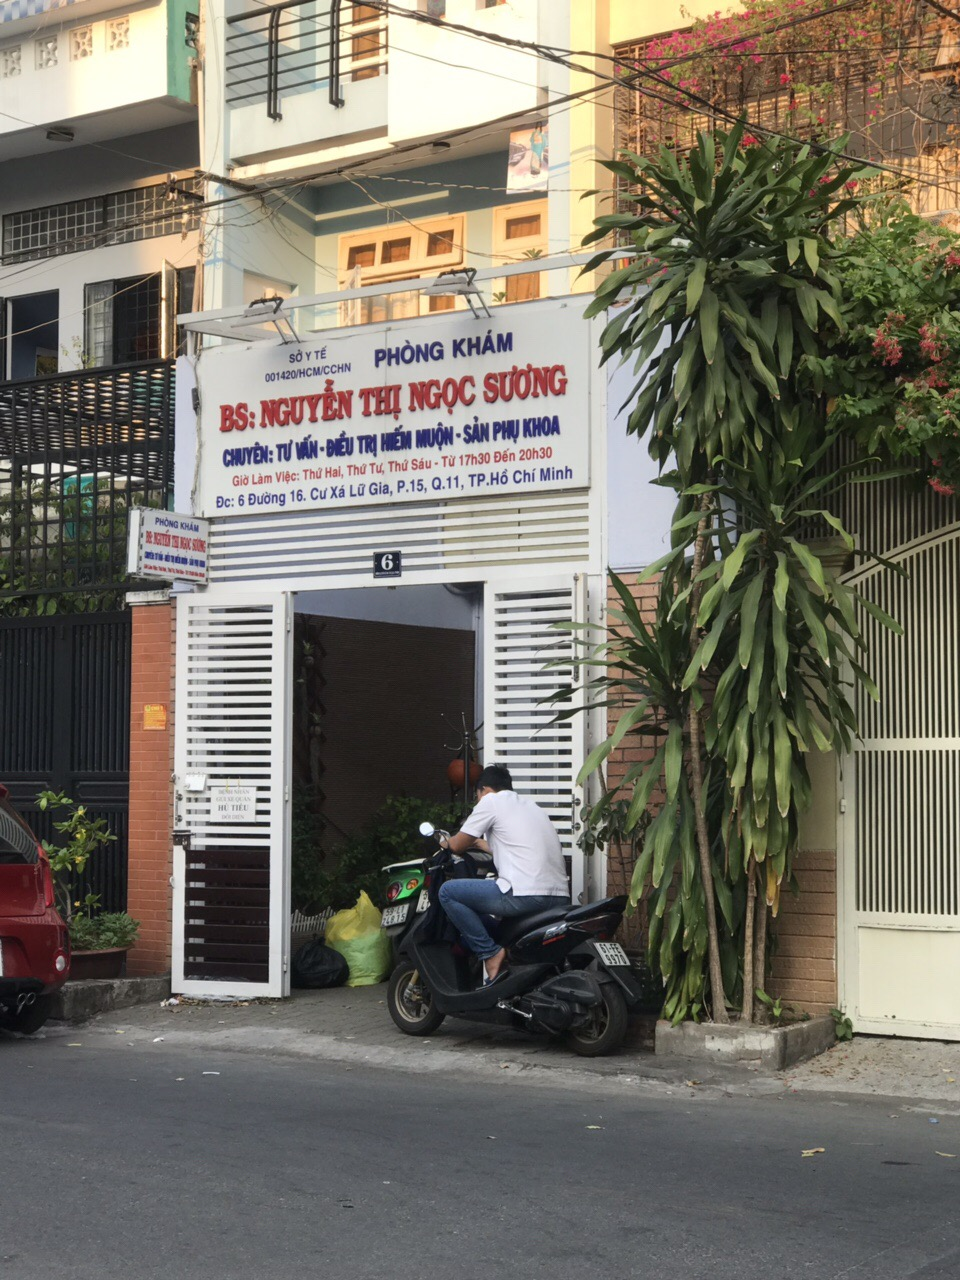 Phòng khám Sản phụ khoa & Siêu âm - BS. Nguyễn Thị Ngọc Sương